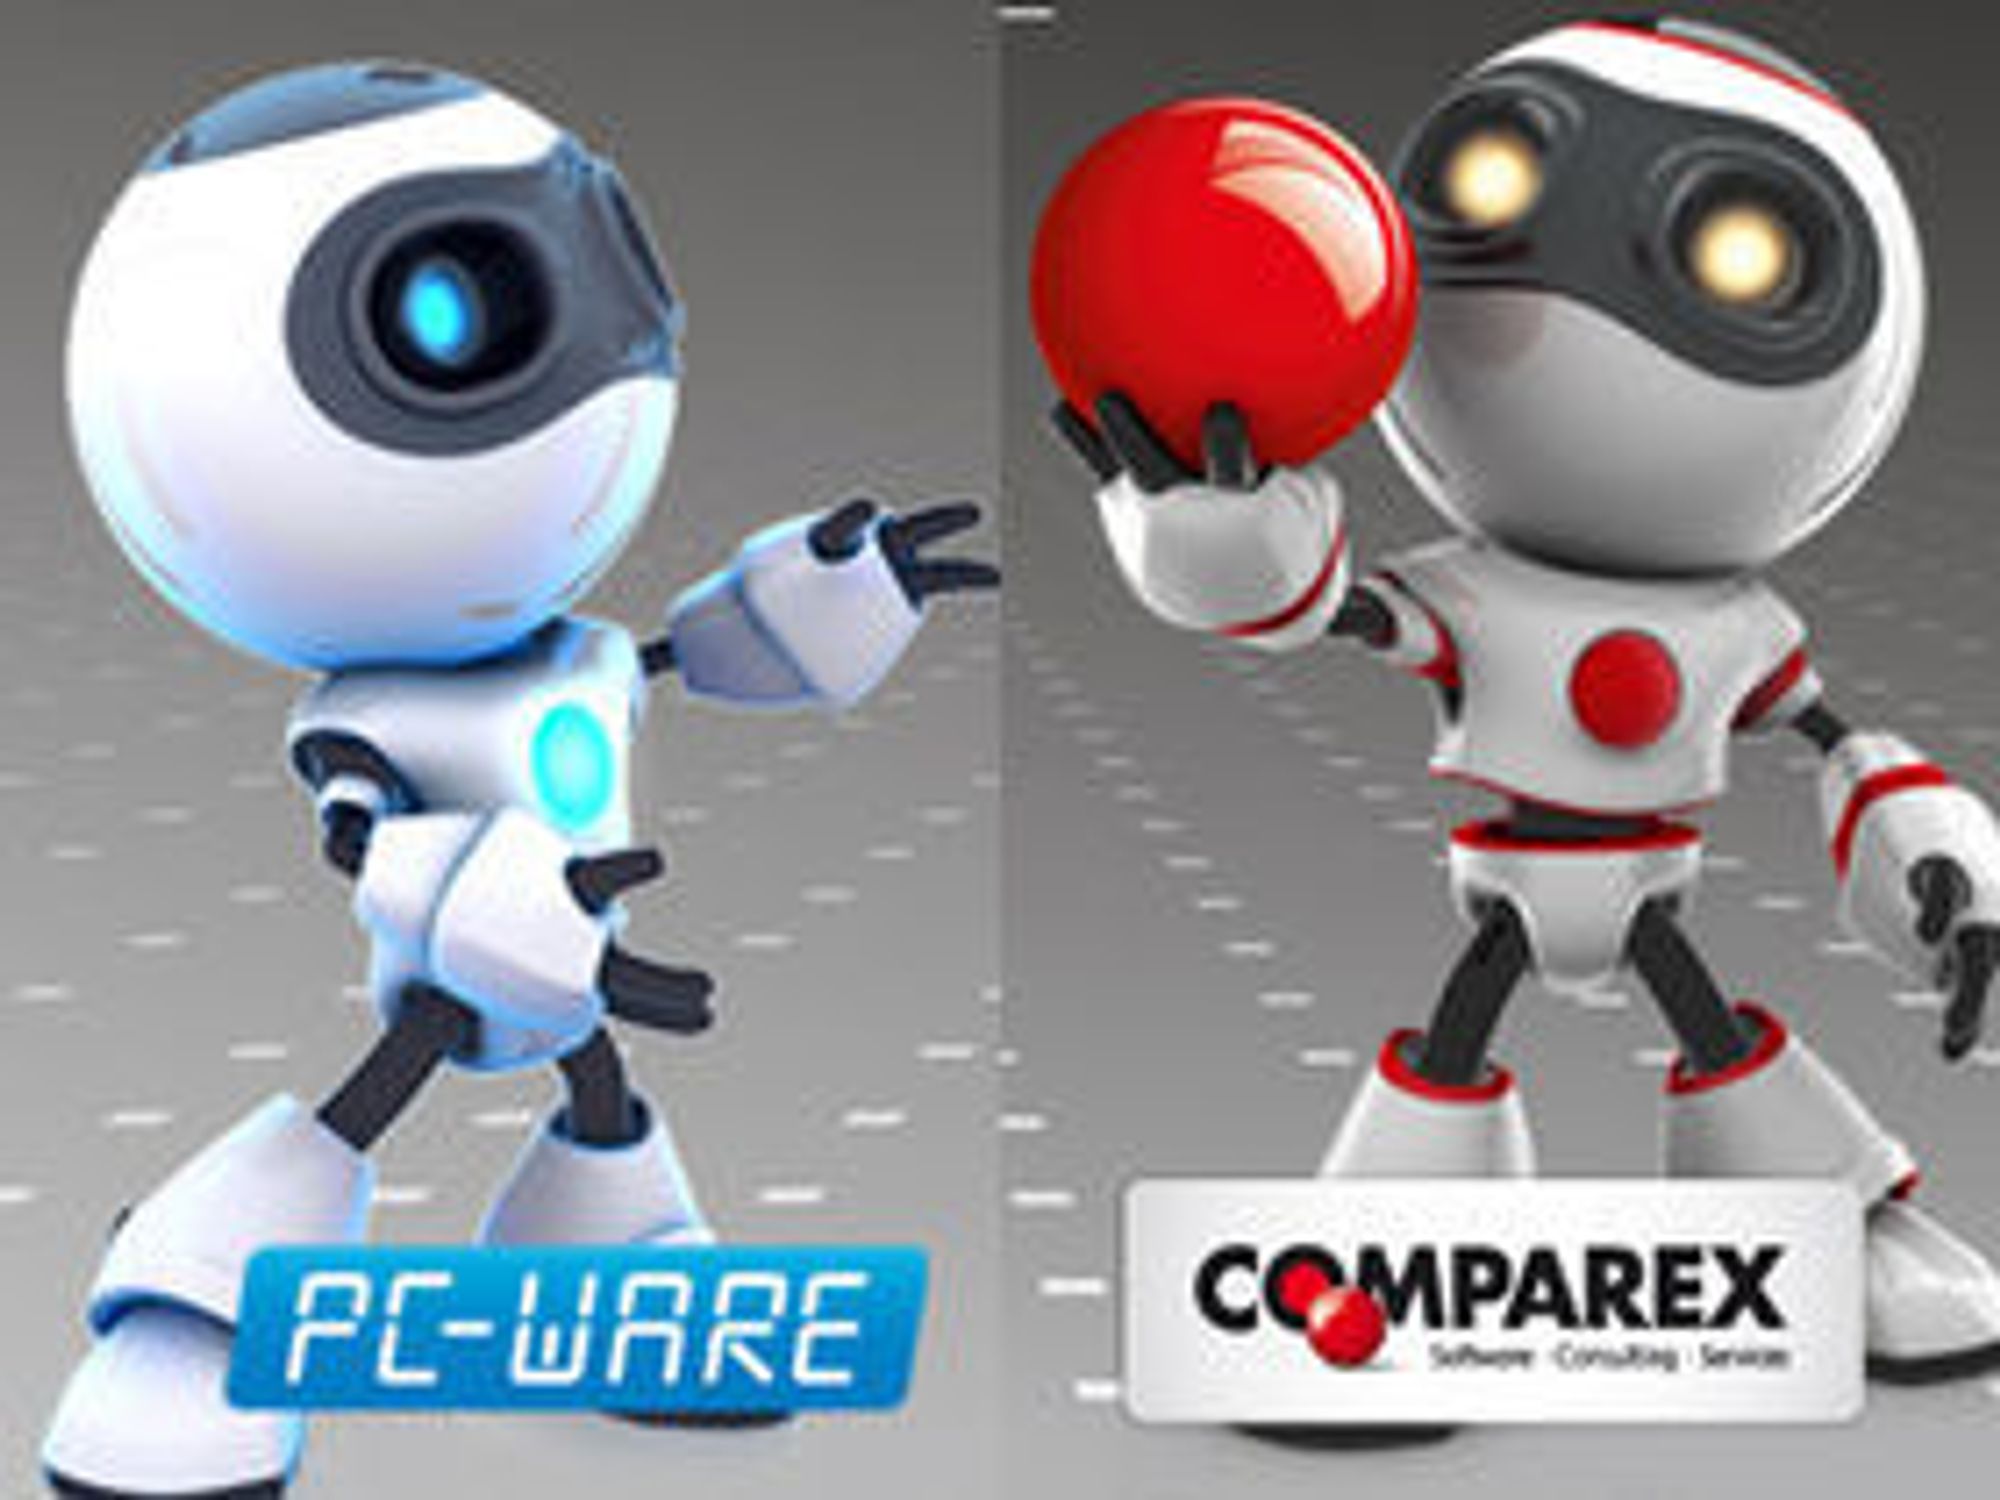 Det tyske selskapet PC-Ware byttet navn til Comparex i 2011. Selskapet kjøpte i sin tid gamle Ravensholm og kunne dermed feire 25 år jubileum i sommer.